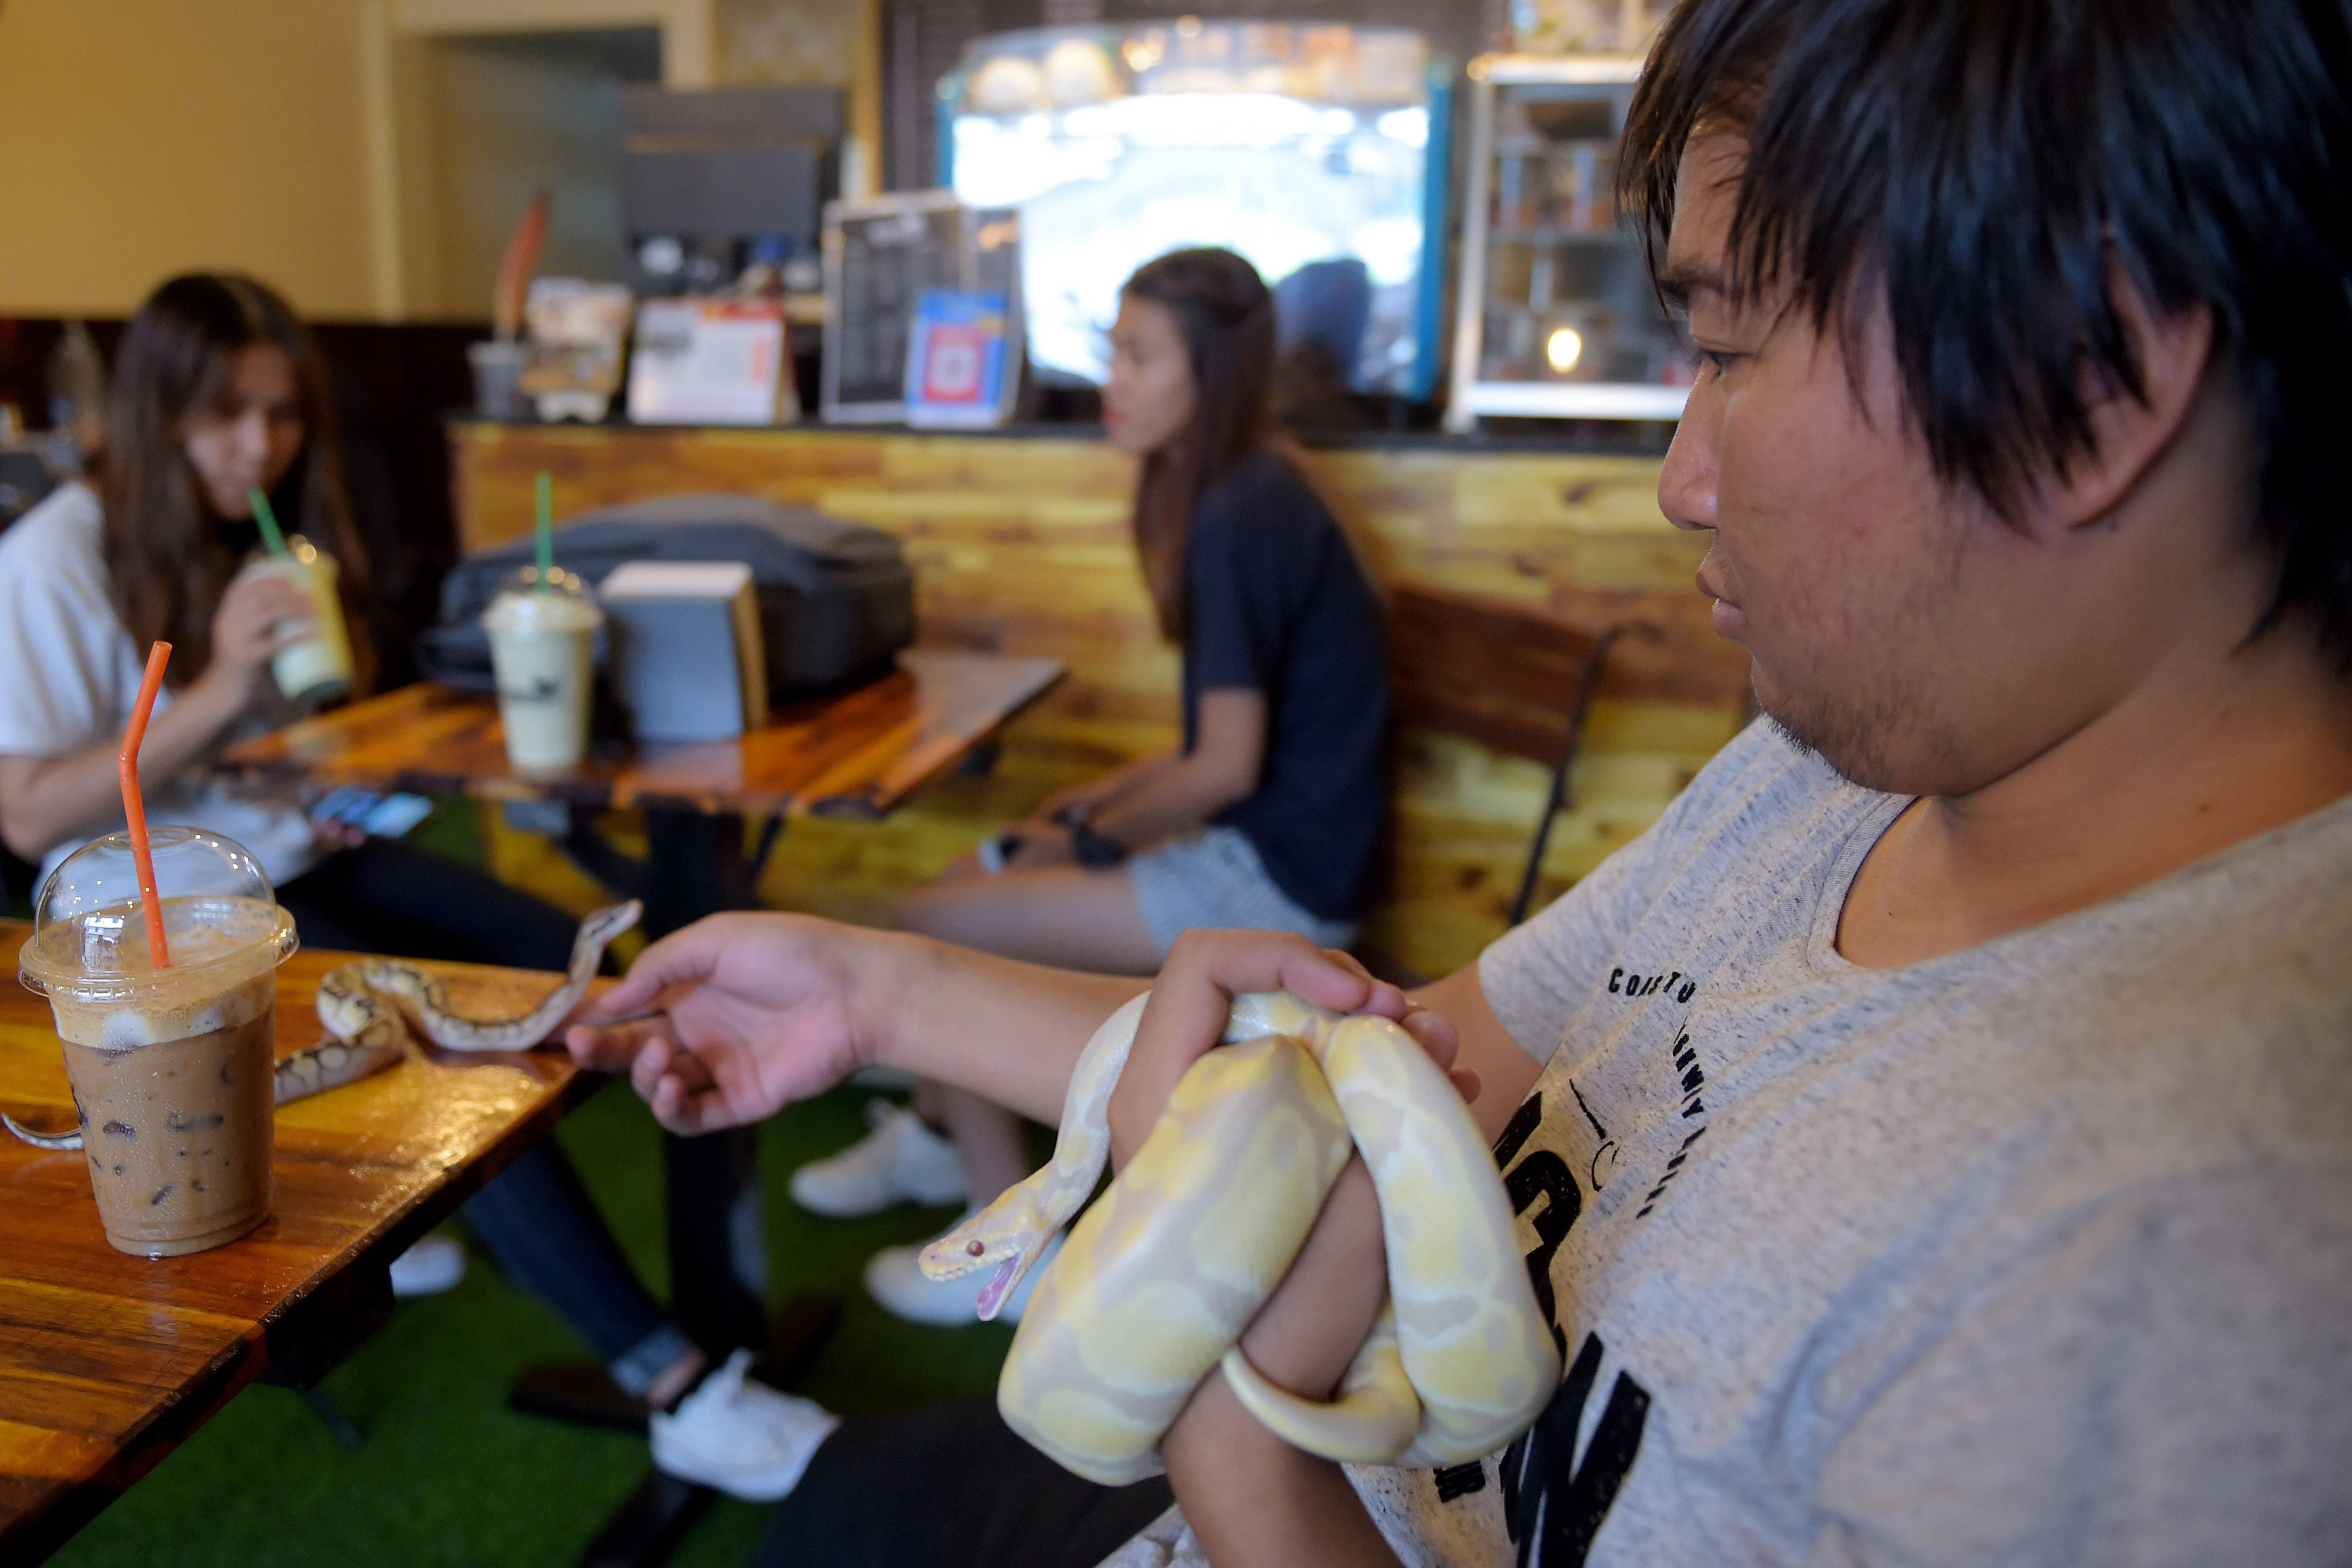 شاب يلعب مع الثعابين داخل المقهى